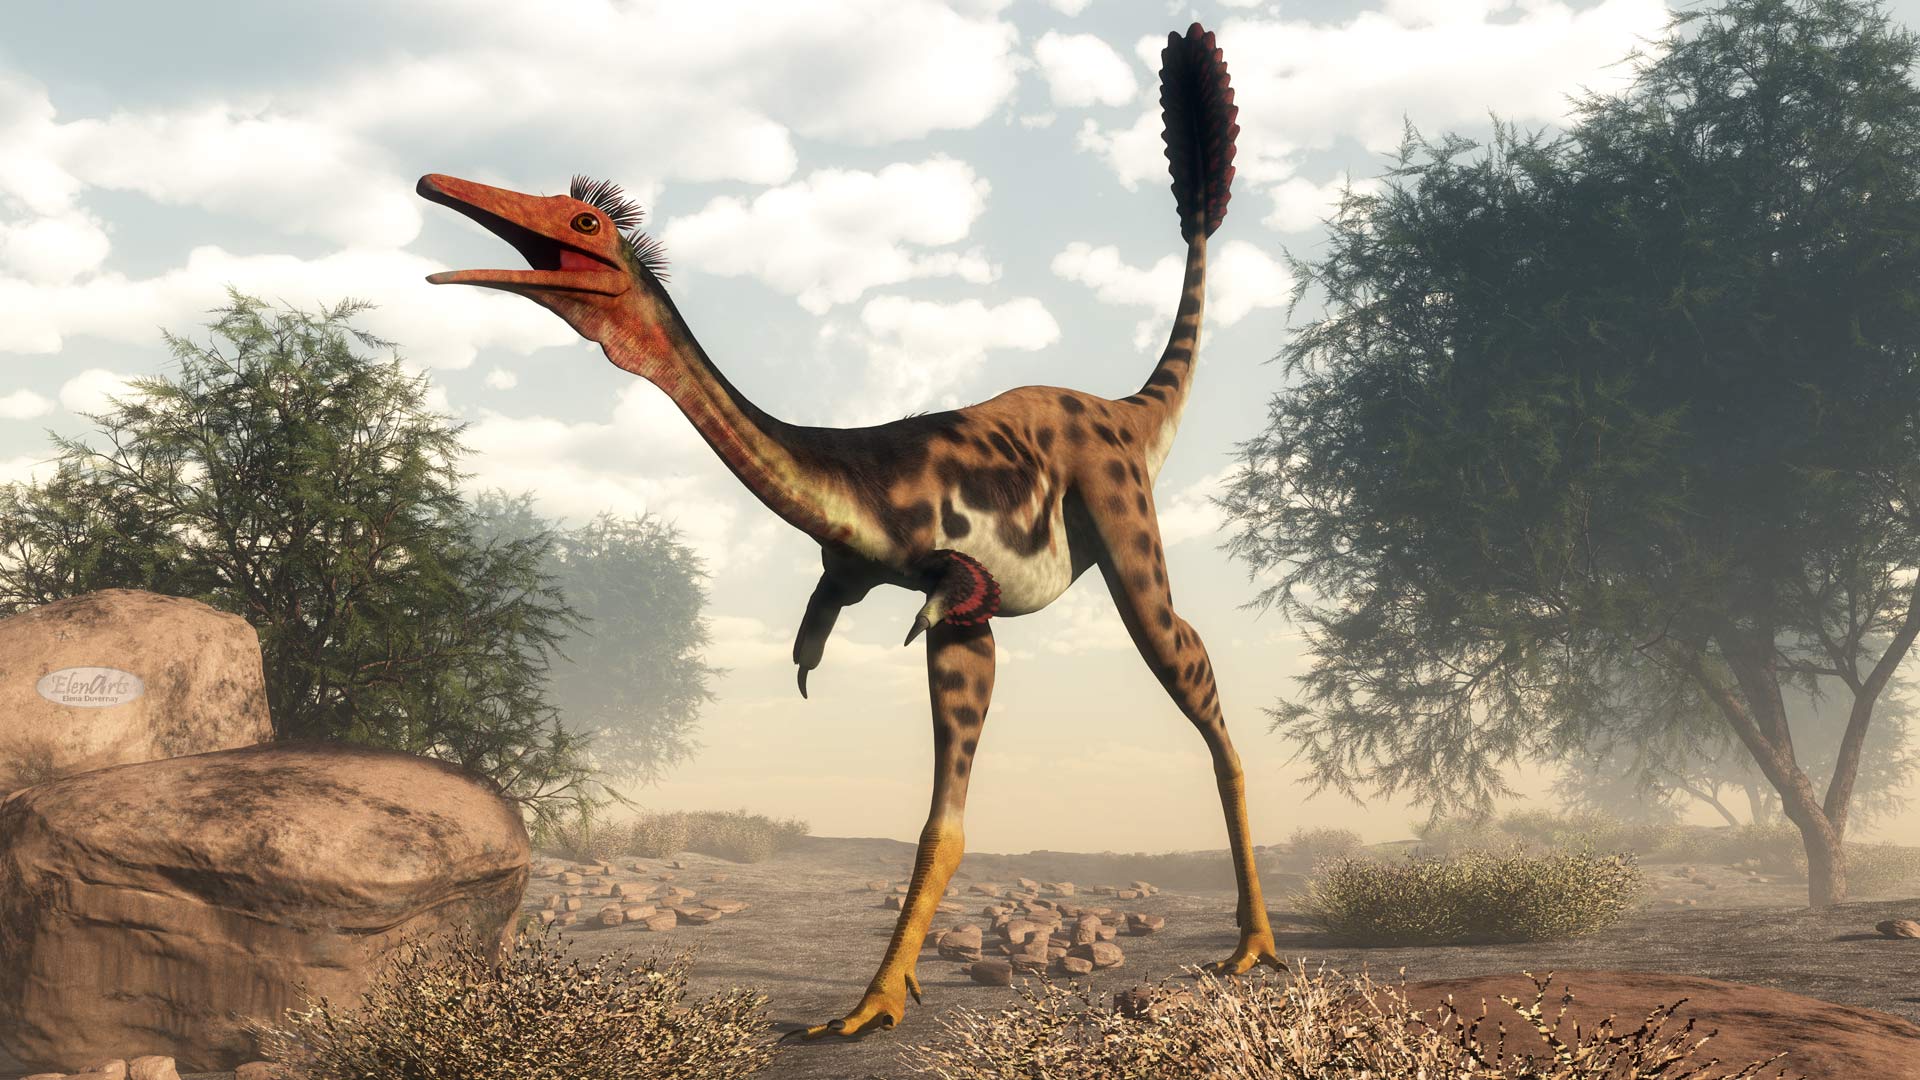 Mononykus dinosaur in the desert – 3D render